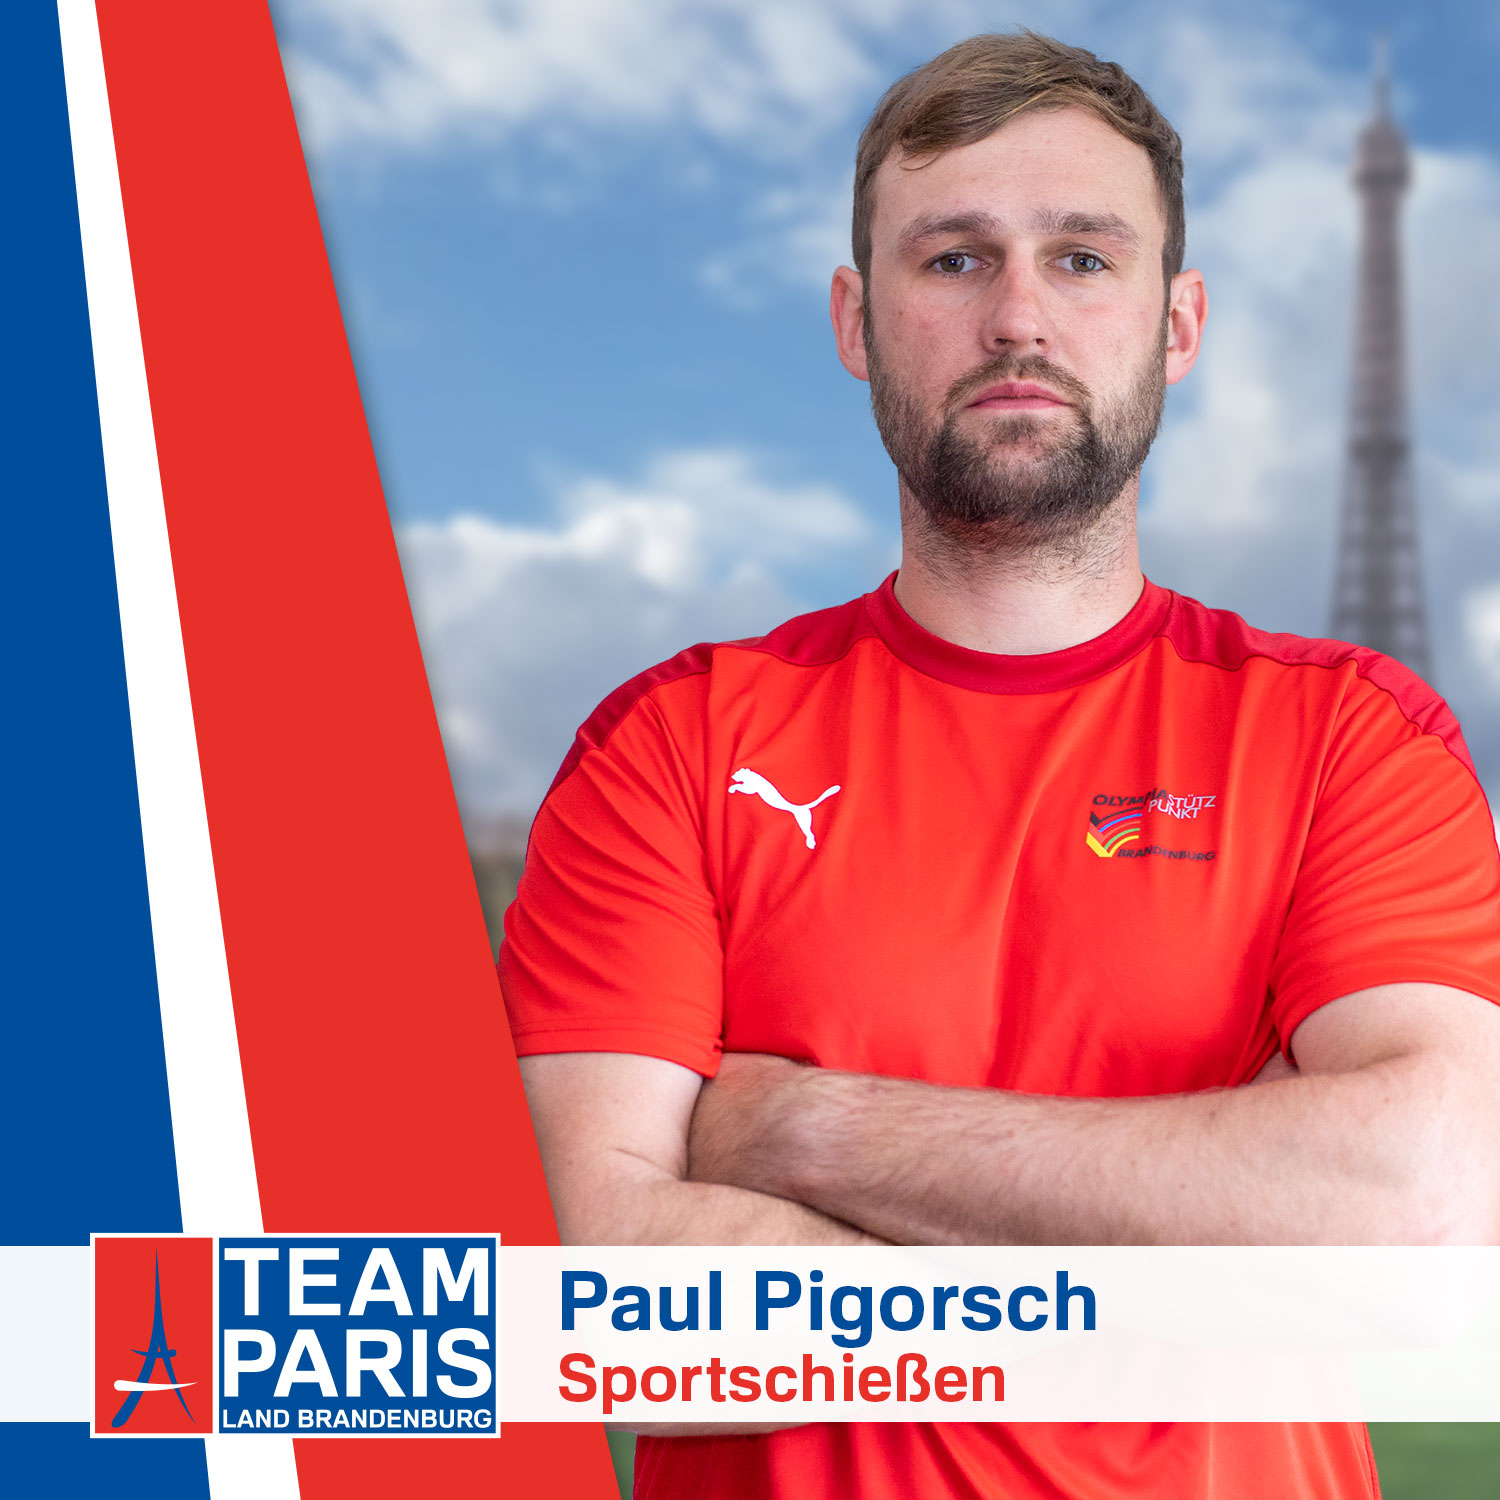 Paul Pigorsch